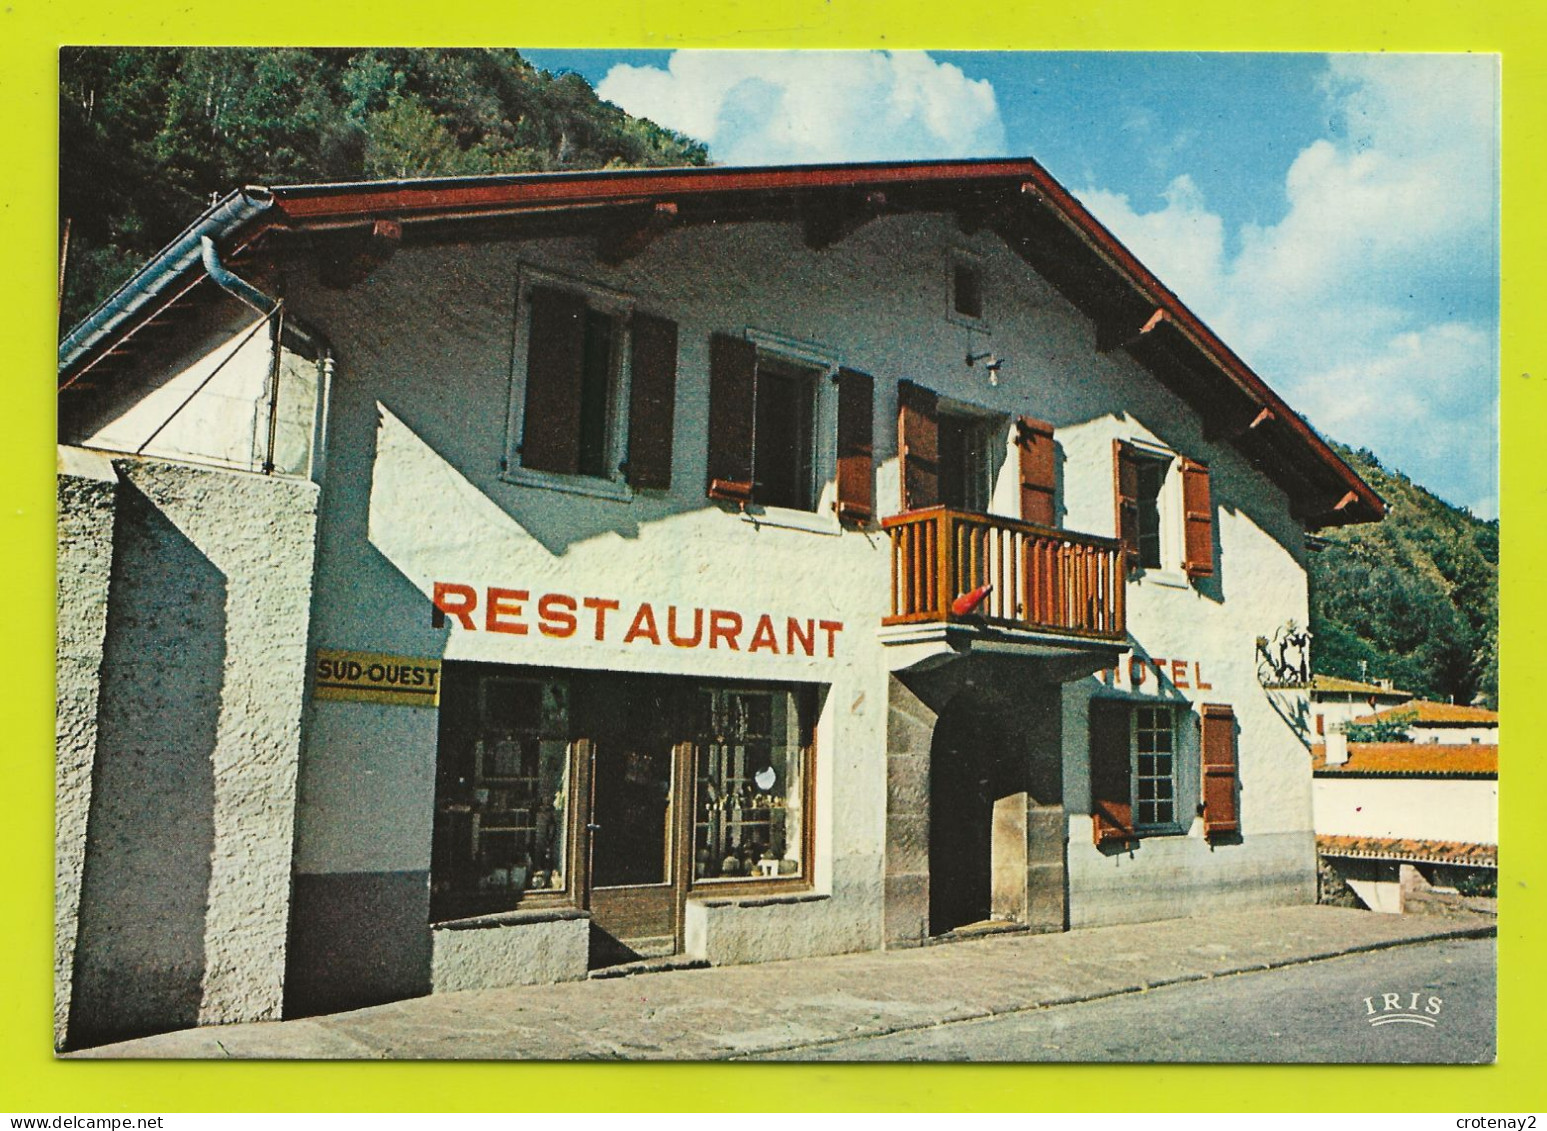 64 ARNEGUY FRONTIERE Hôtel Restaurant CLEMENTENIA PUB Journal SUD-OUEST VOIR DOS - Arnéguy